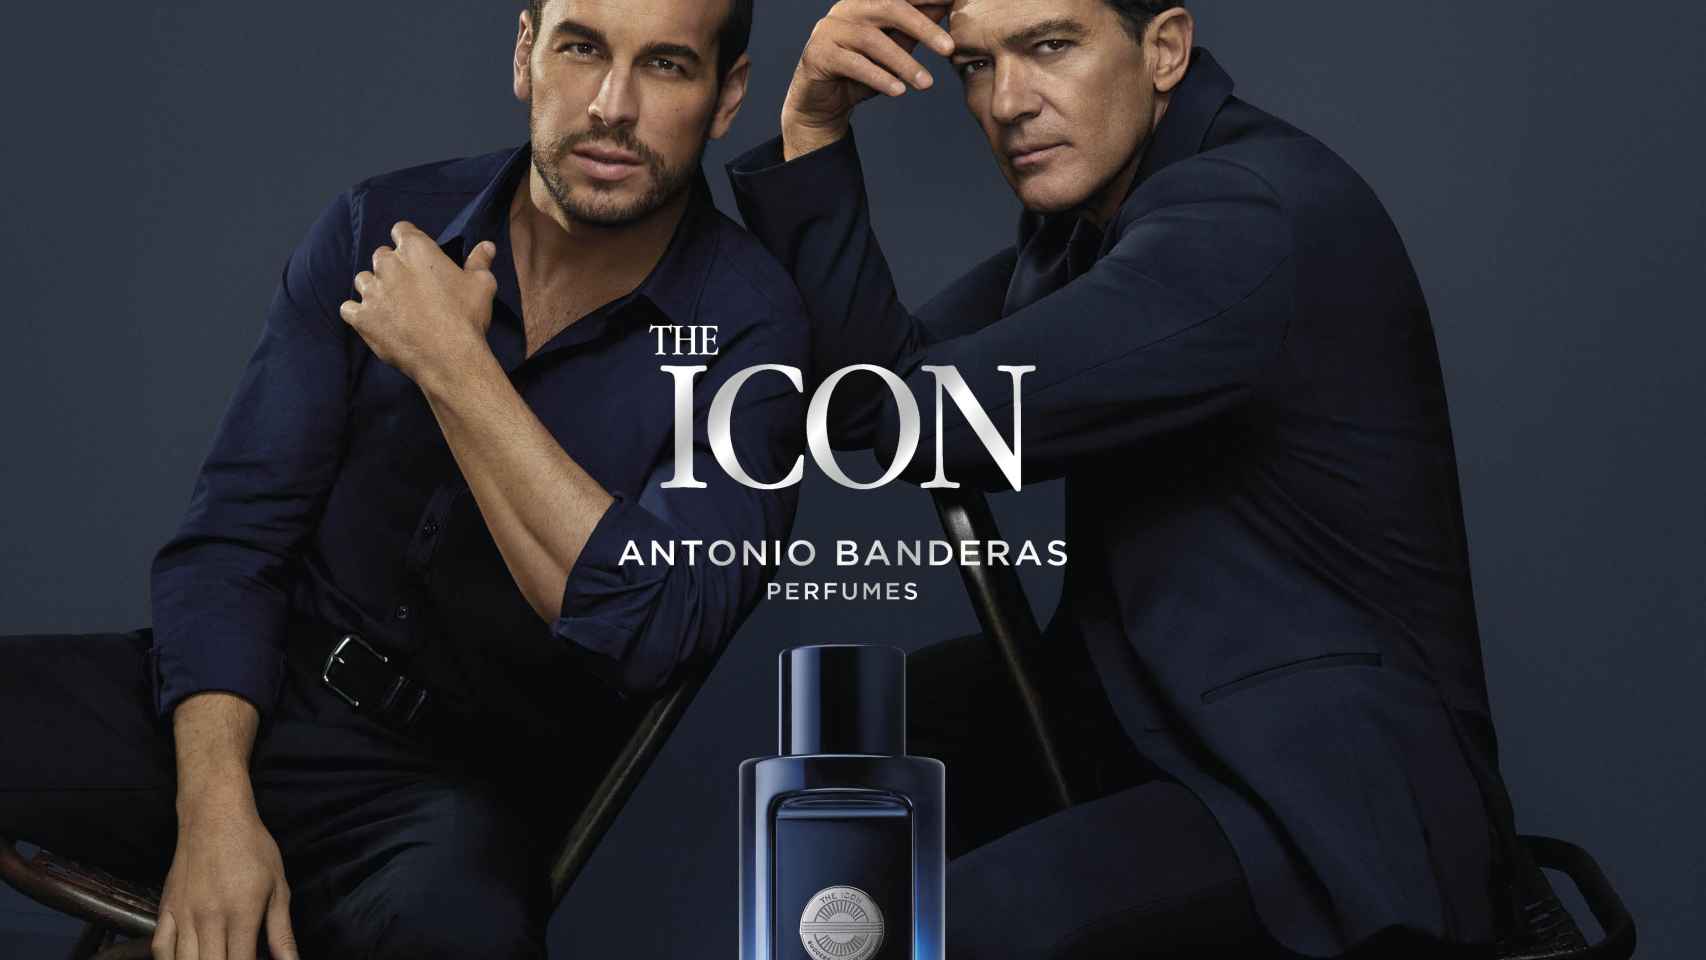 Mario Casas y Antonio Banderas en una imagen promocional.